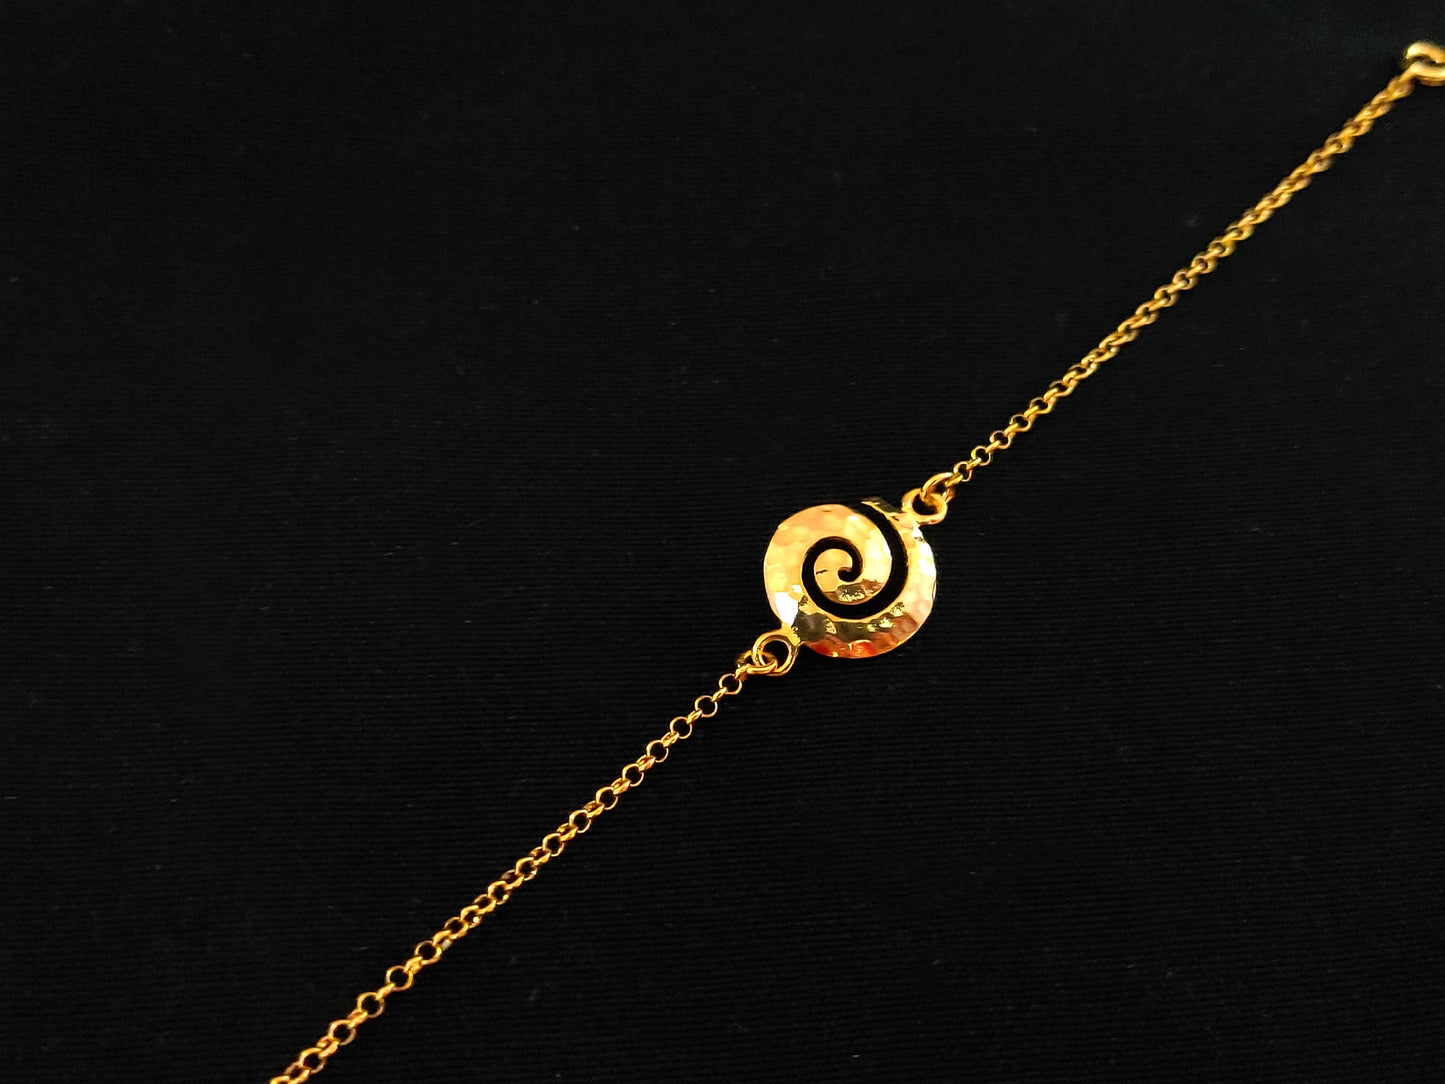 Argent sterling 925 grec ancien martelé spirale cercle de vie fine chaîne plaqué or bracelet réglable 15 mm, brassard Griechischer